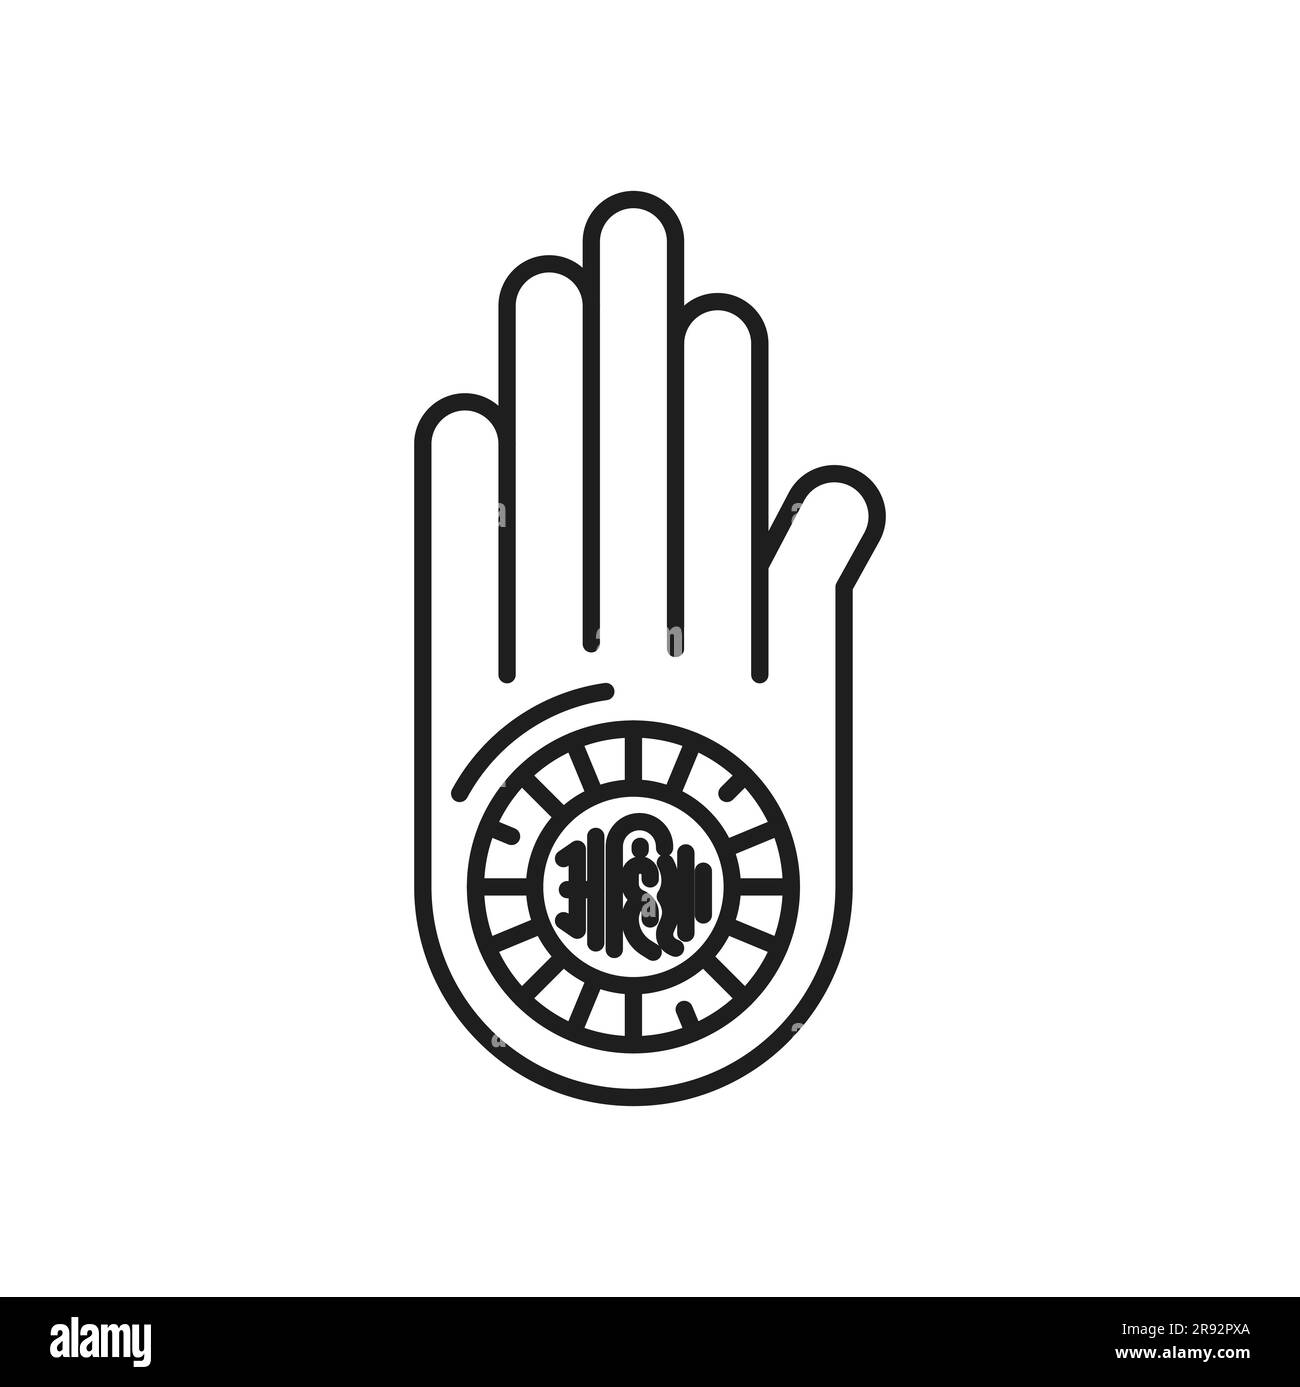 Jainismus Religionssymbol der Ahimsa-Hand oder Dharmachakra von Jain Dharma, Vektorsymbol. Jainismus religiöses Symbol von Ahimsa und Samsara zu Nirvana, Jain oder indischer spiritueller Religion Symbol der Handfläche Stock Vektor